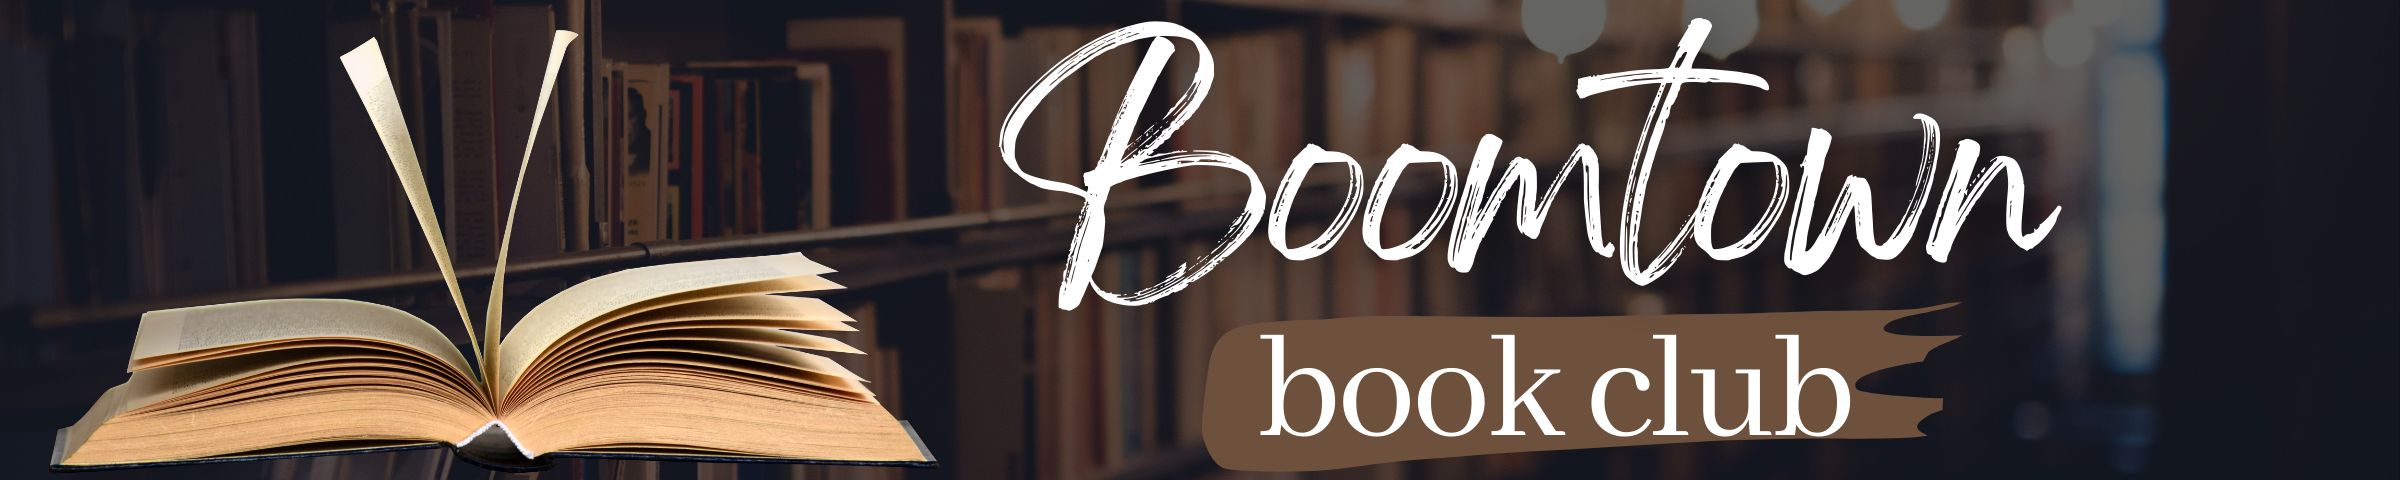 Boomtown Book Club